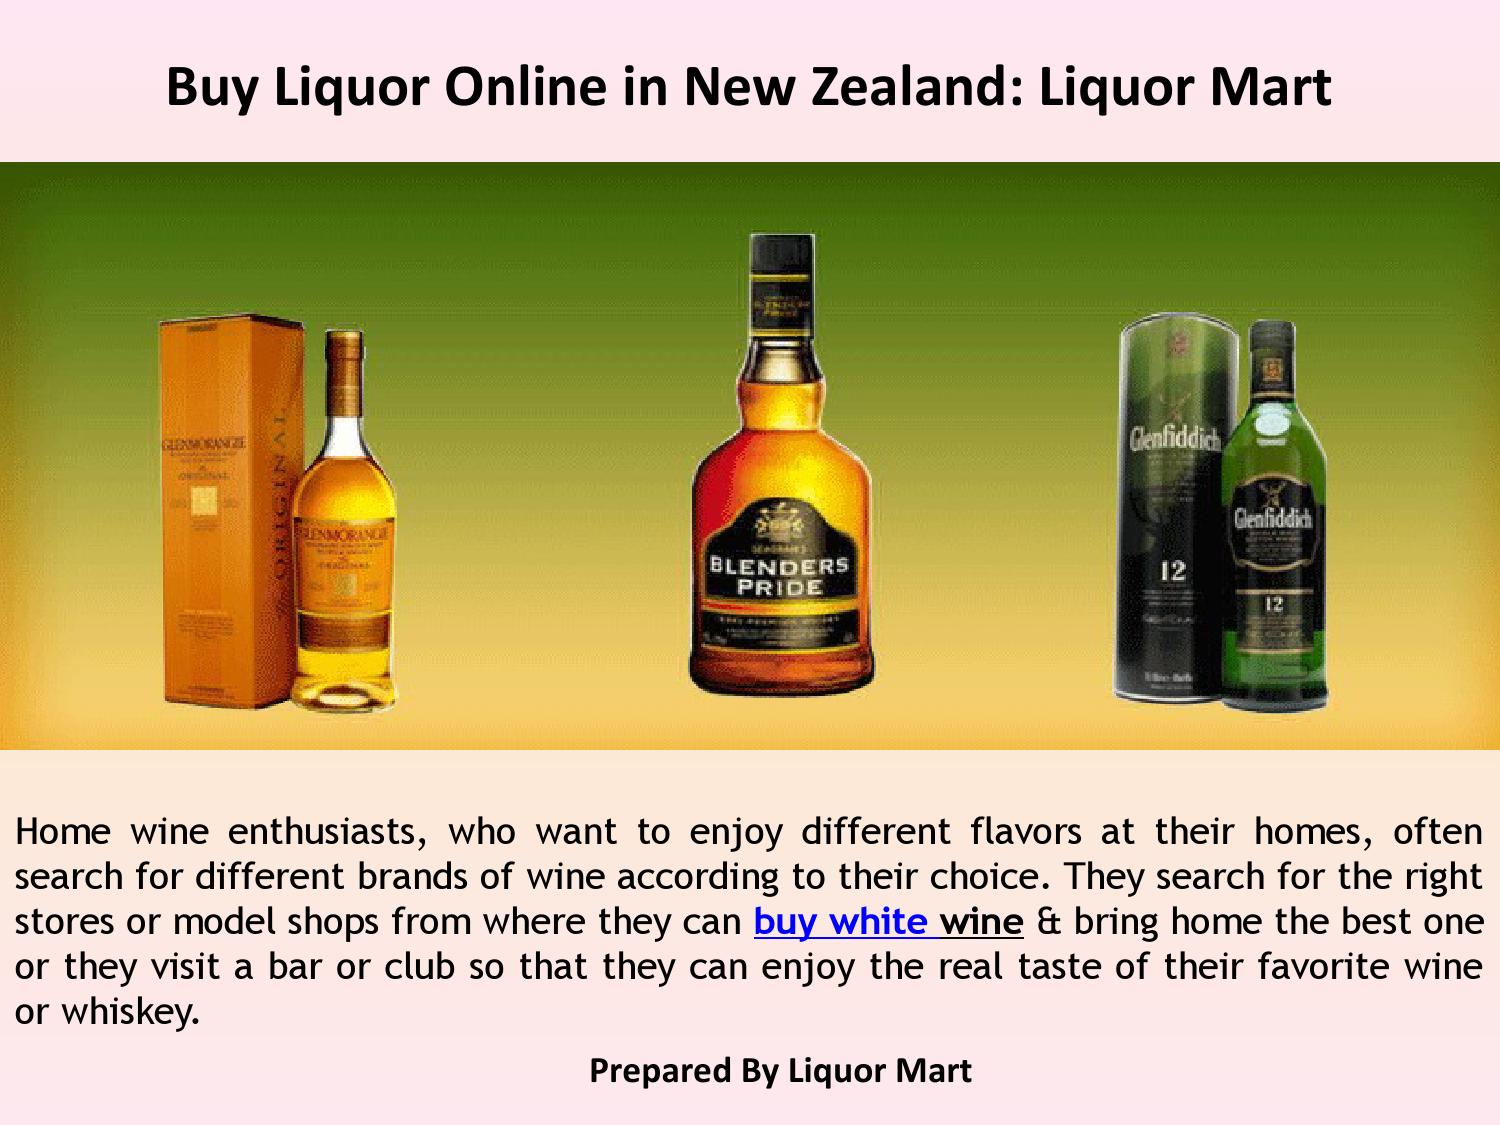 Buy Liquor Online in New Zealand by liquormart